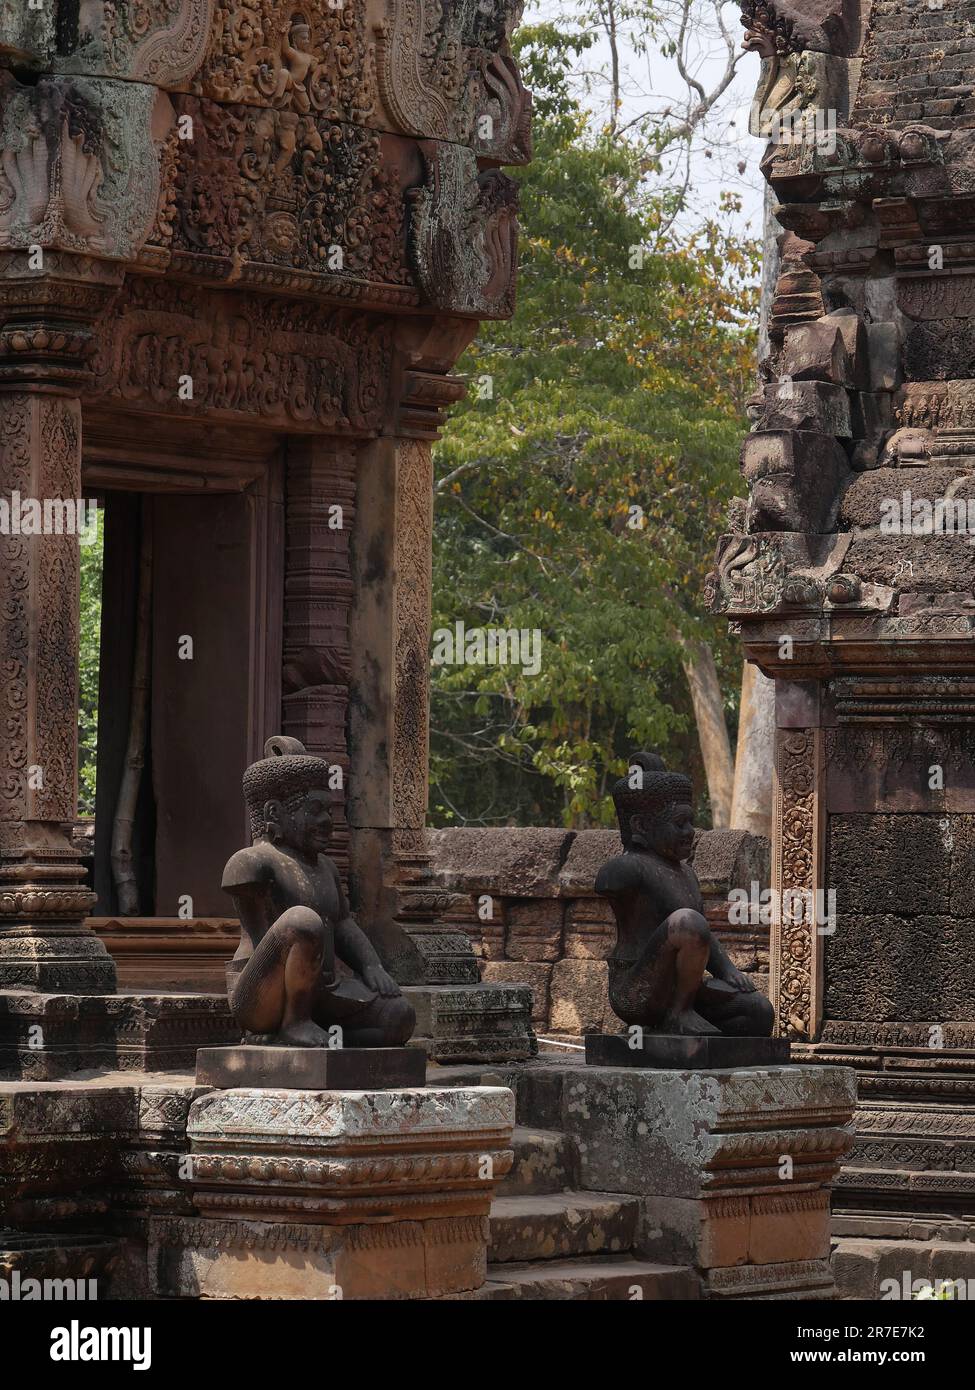 Tempio di Banteay Srei, provincia di Siem Reap, complesso del tempio di Angkor, patrimonio mondiale dell'UNESCO nel 1192, costruito nel 967 dal re Jayavarman V, C. Foto Stock